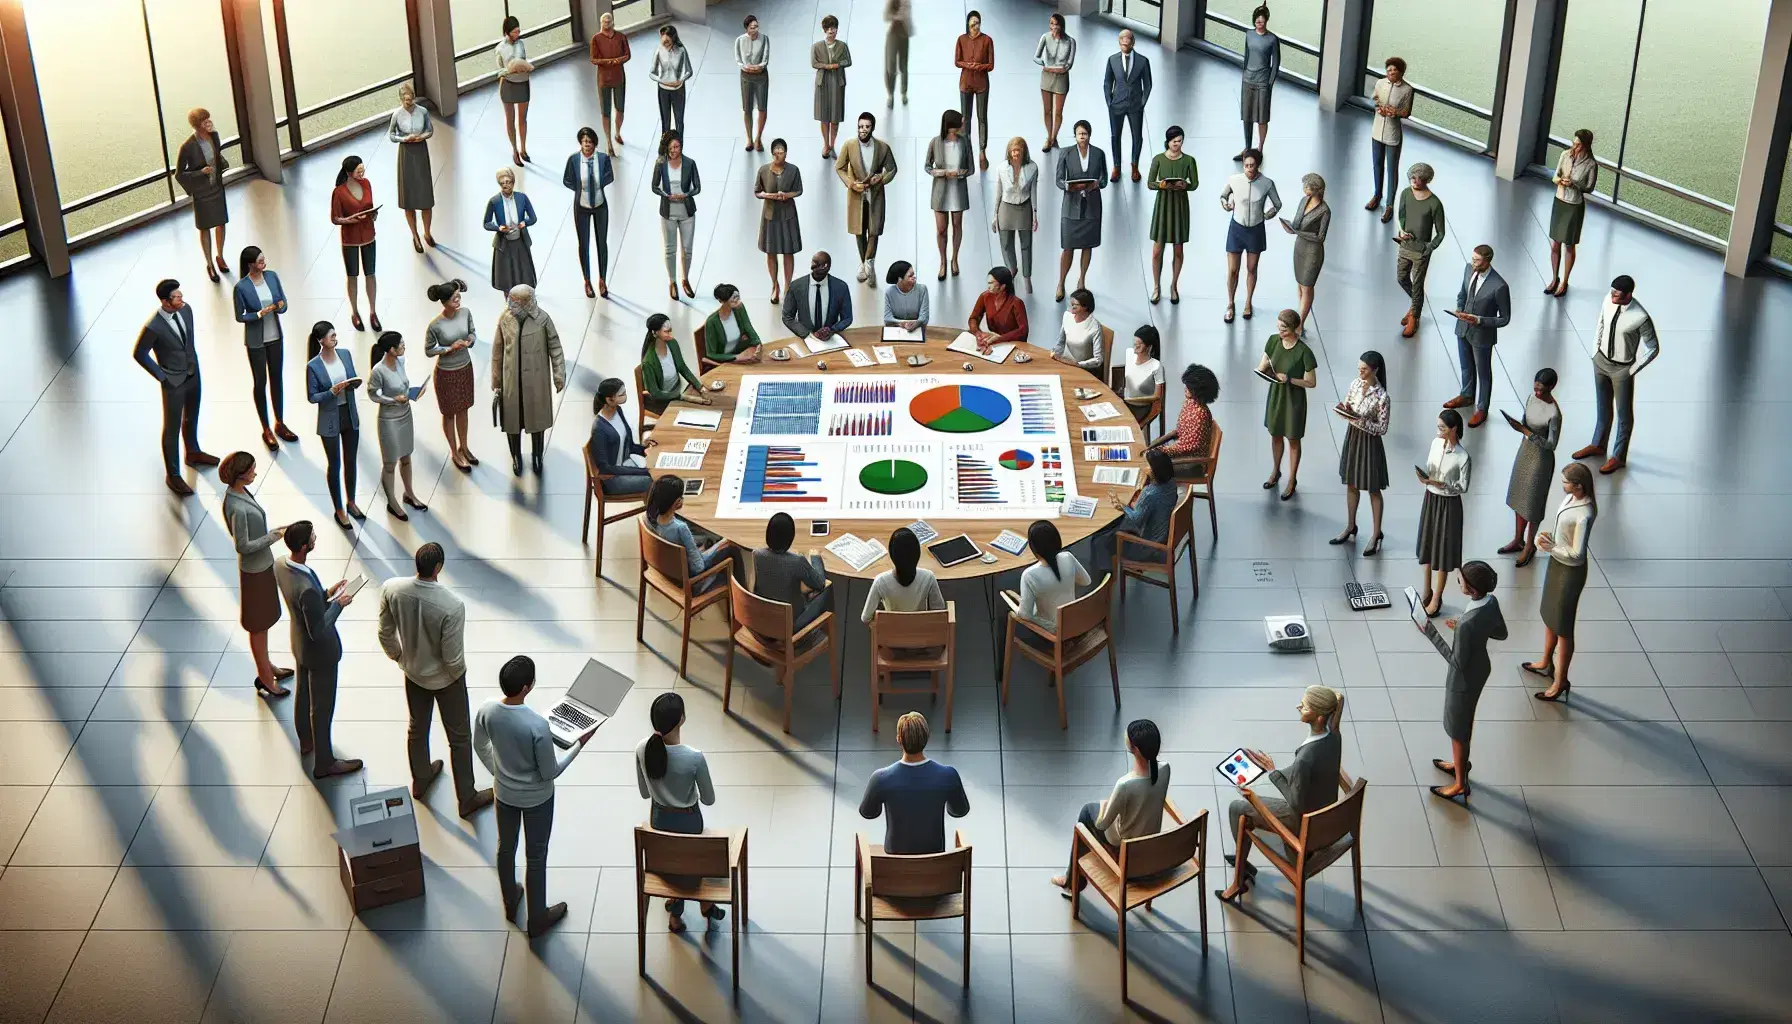 Grupo diverso de personas en reunión de trabajo con gráficos, calculadora y dispositivos electrónicos en una sala iluminada con plantas.